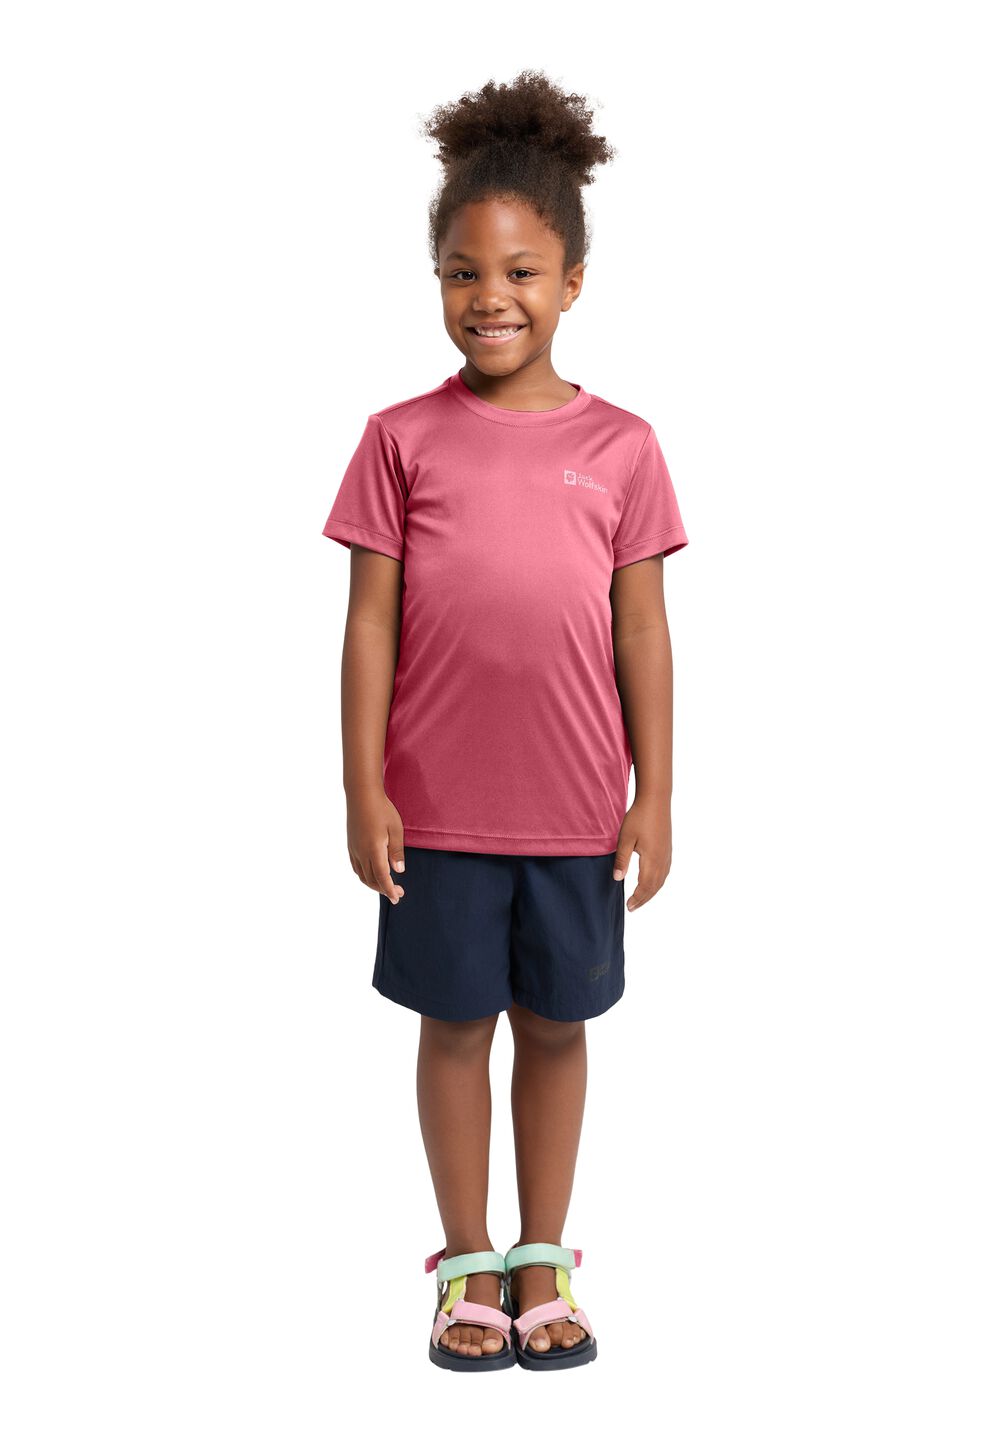 Jack Wolfskin Funktionsshirt Kinder Active Solid T-Shirt Kids 176 soft pink soft pink von Jack Wolfskin